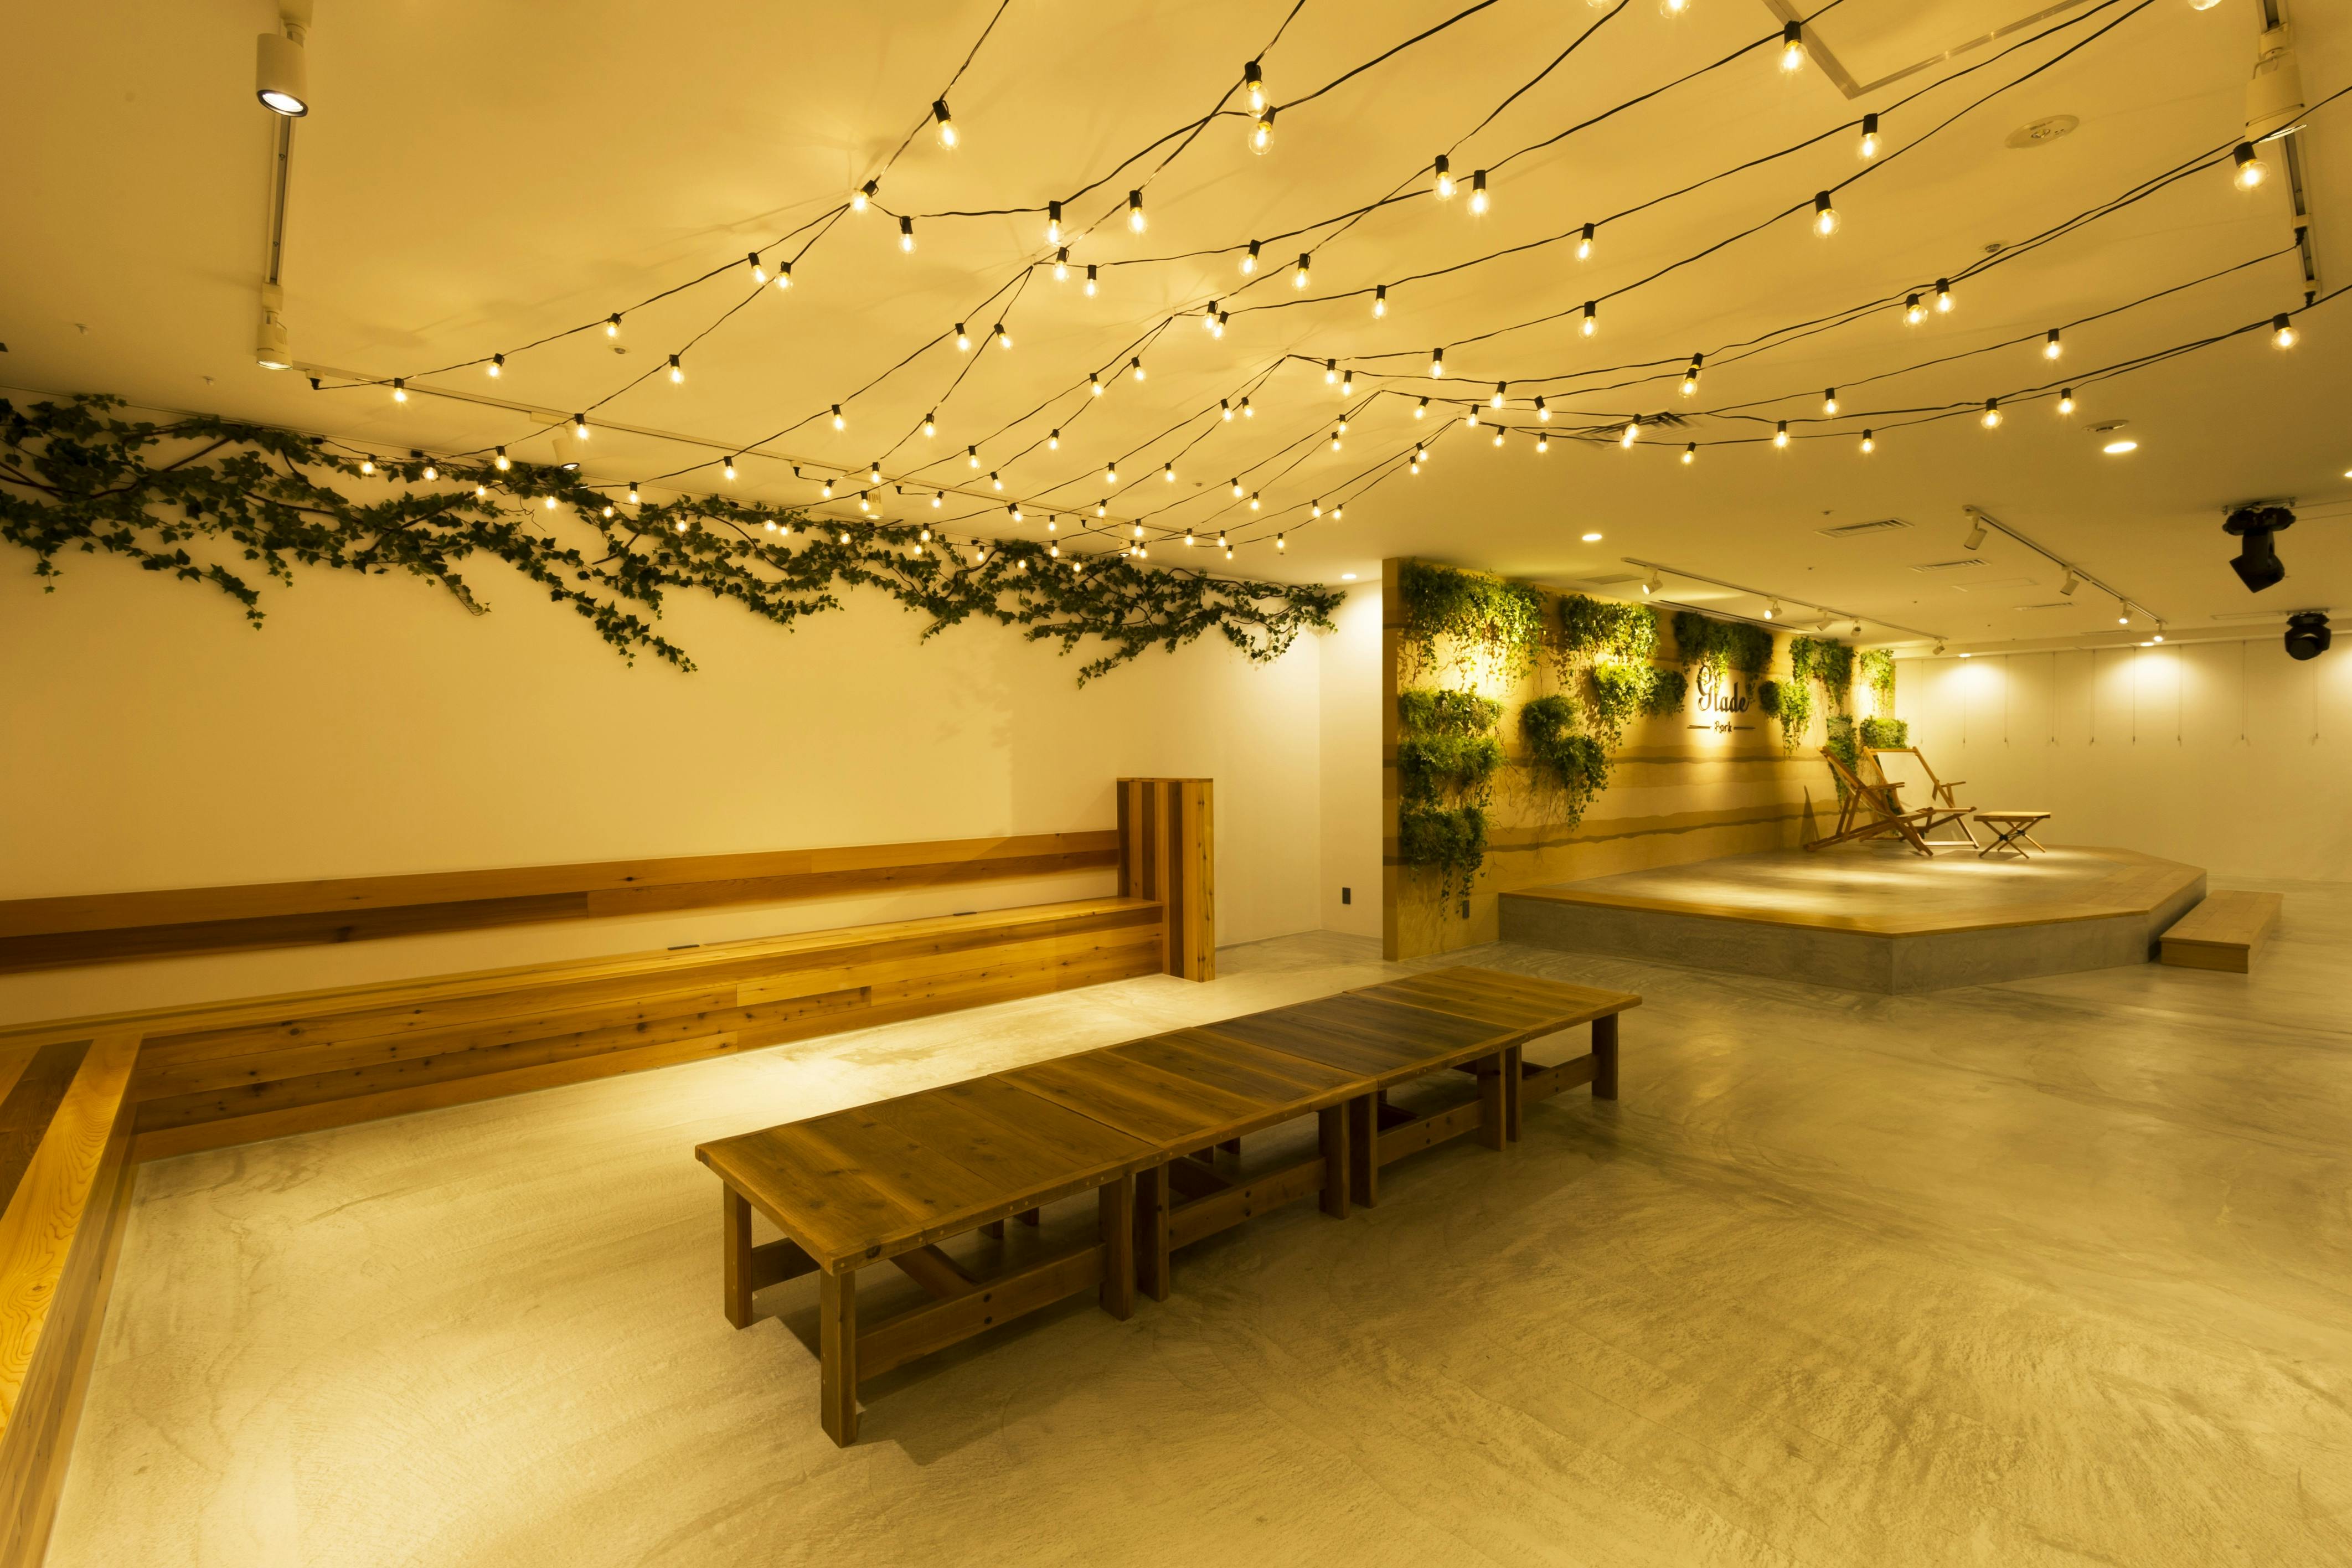 白を基調とした空間に木造の家具を設置した温かみのある空間です。